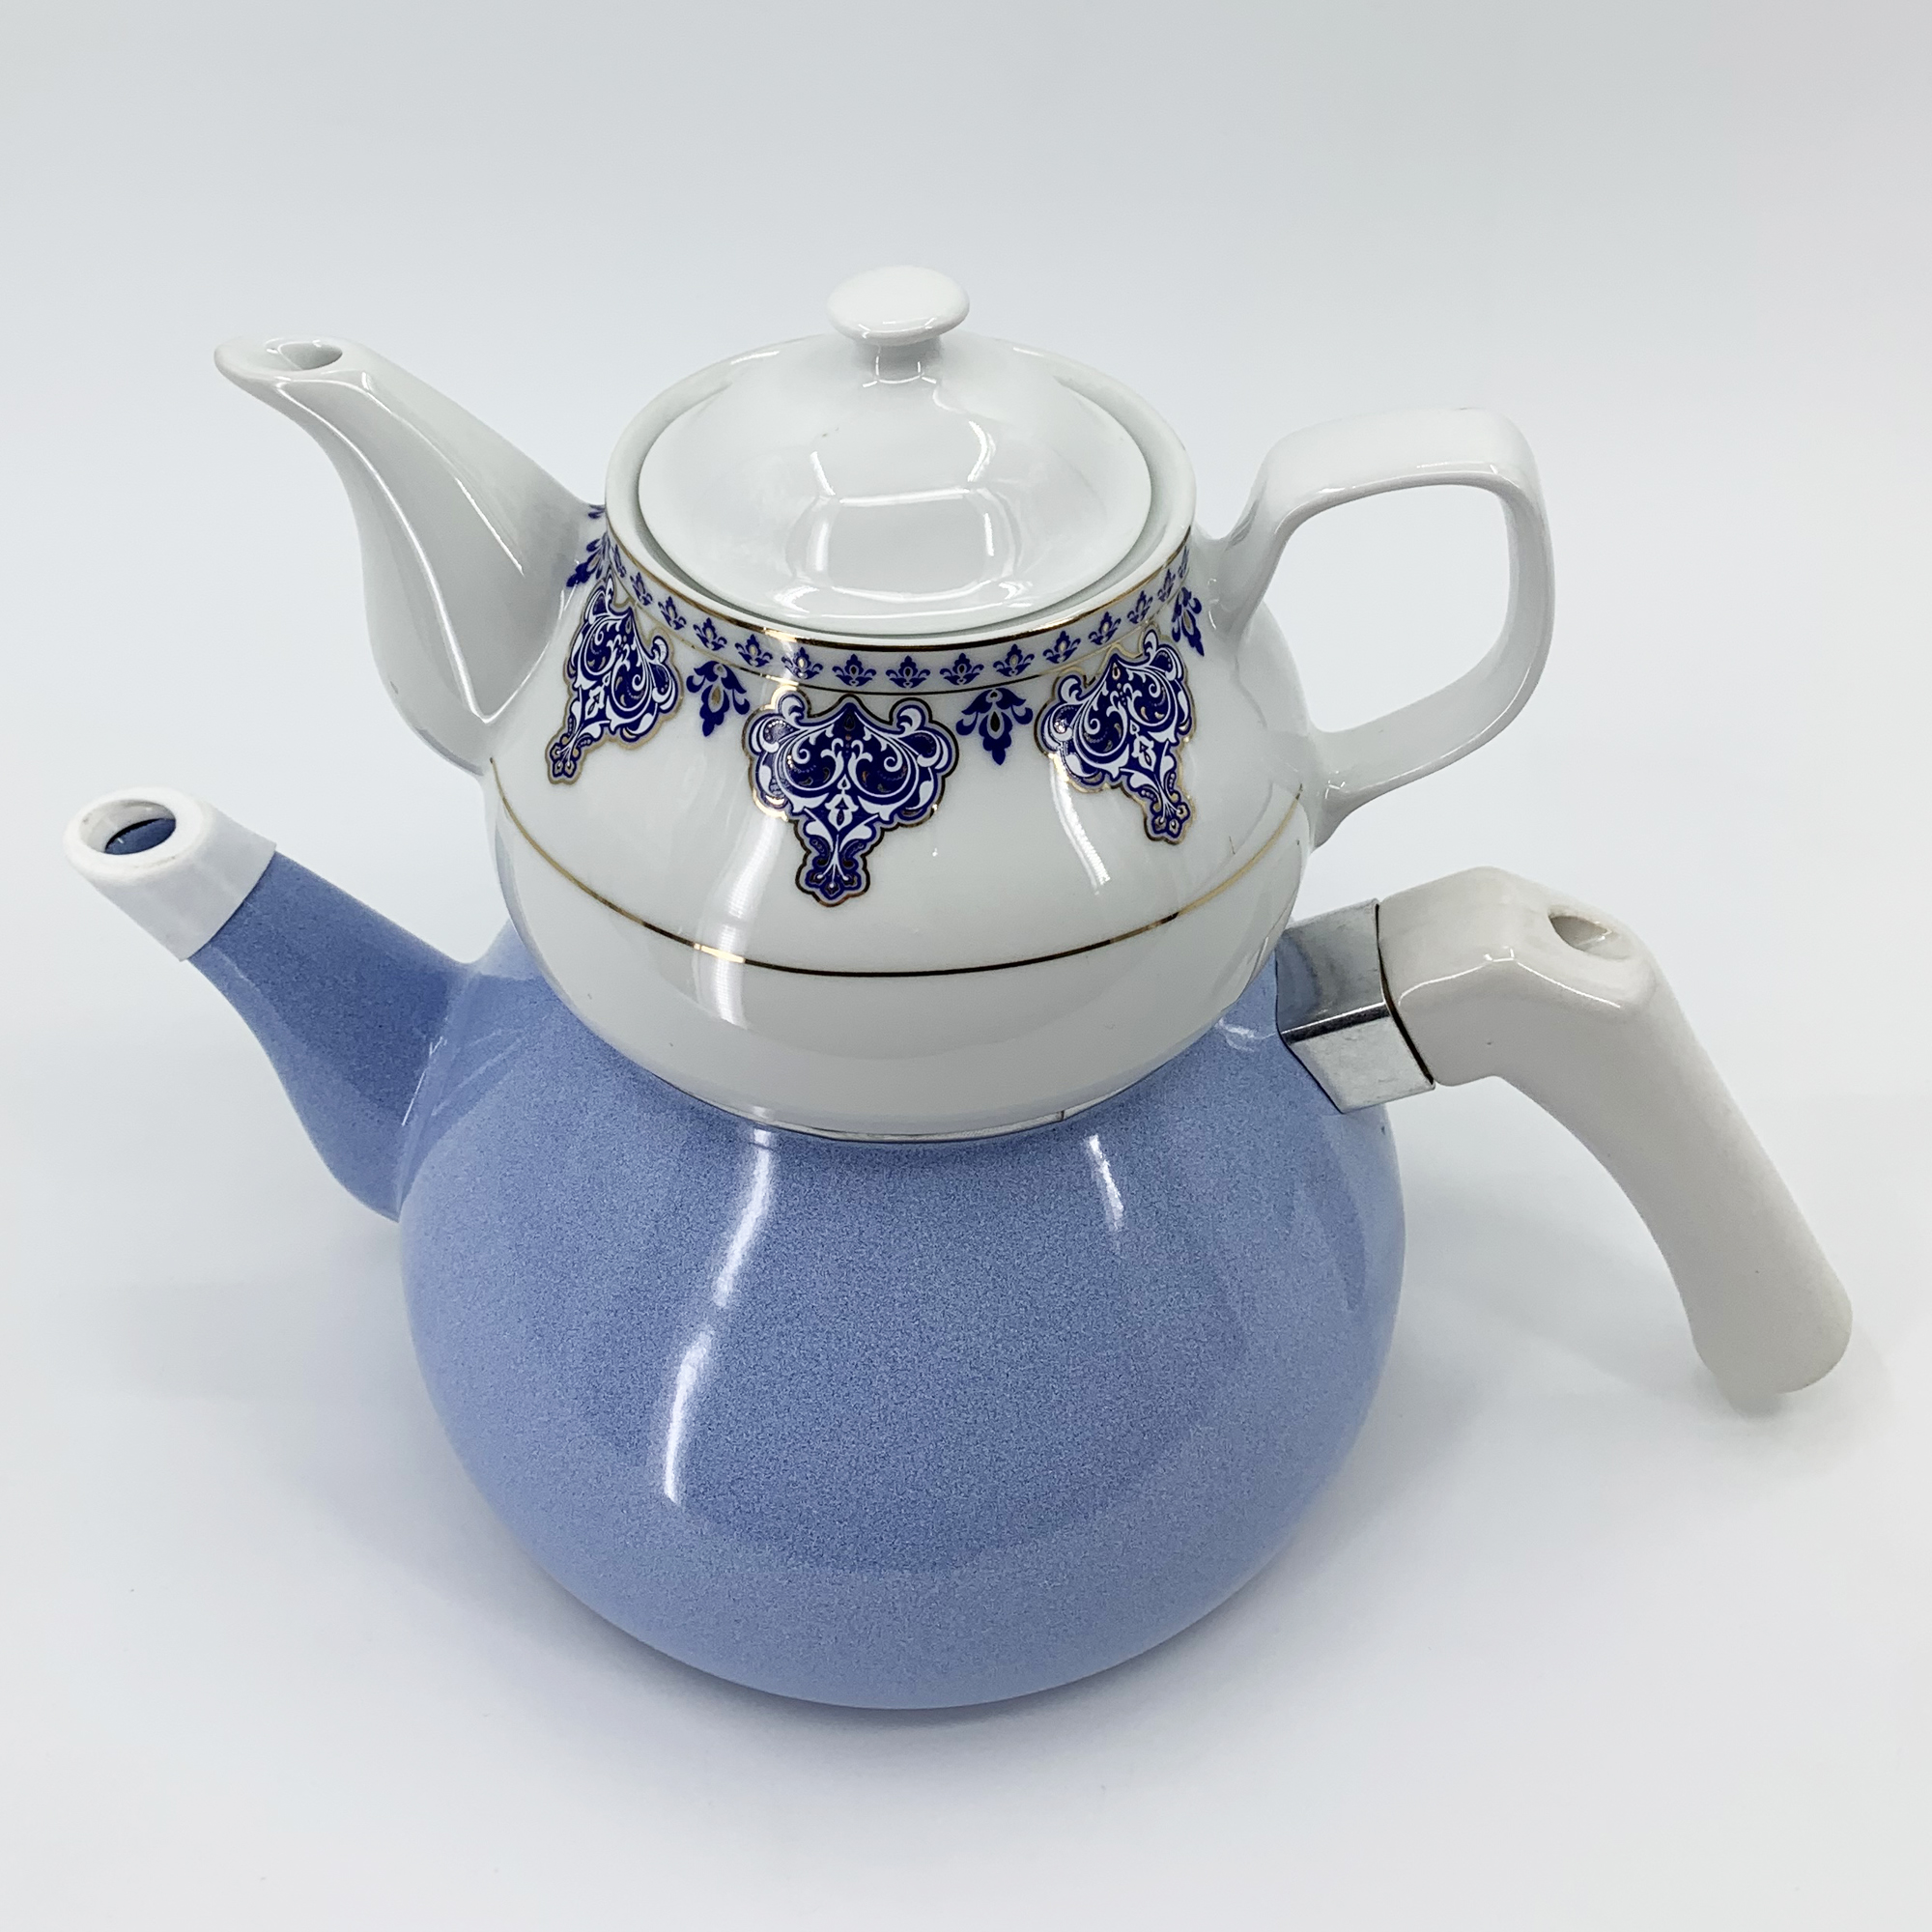 İpek Çaydanlık Takımı - Porselen / Emaye